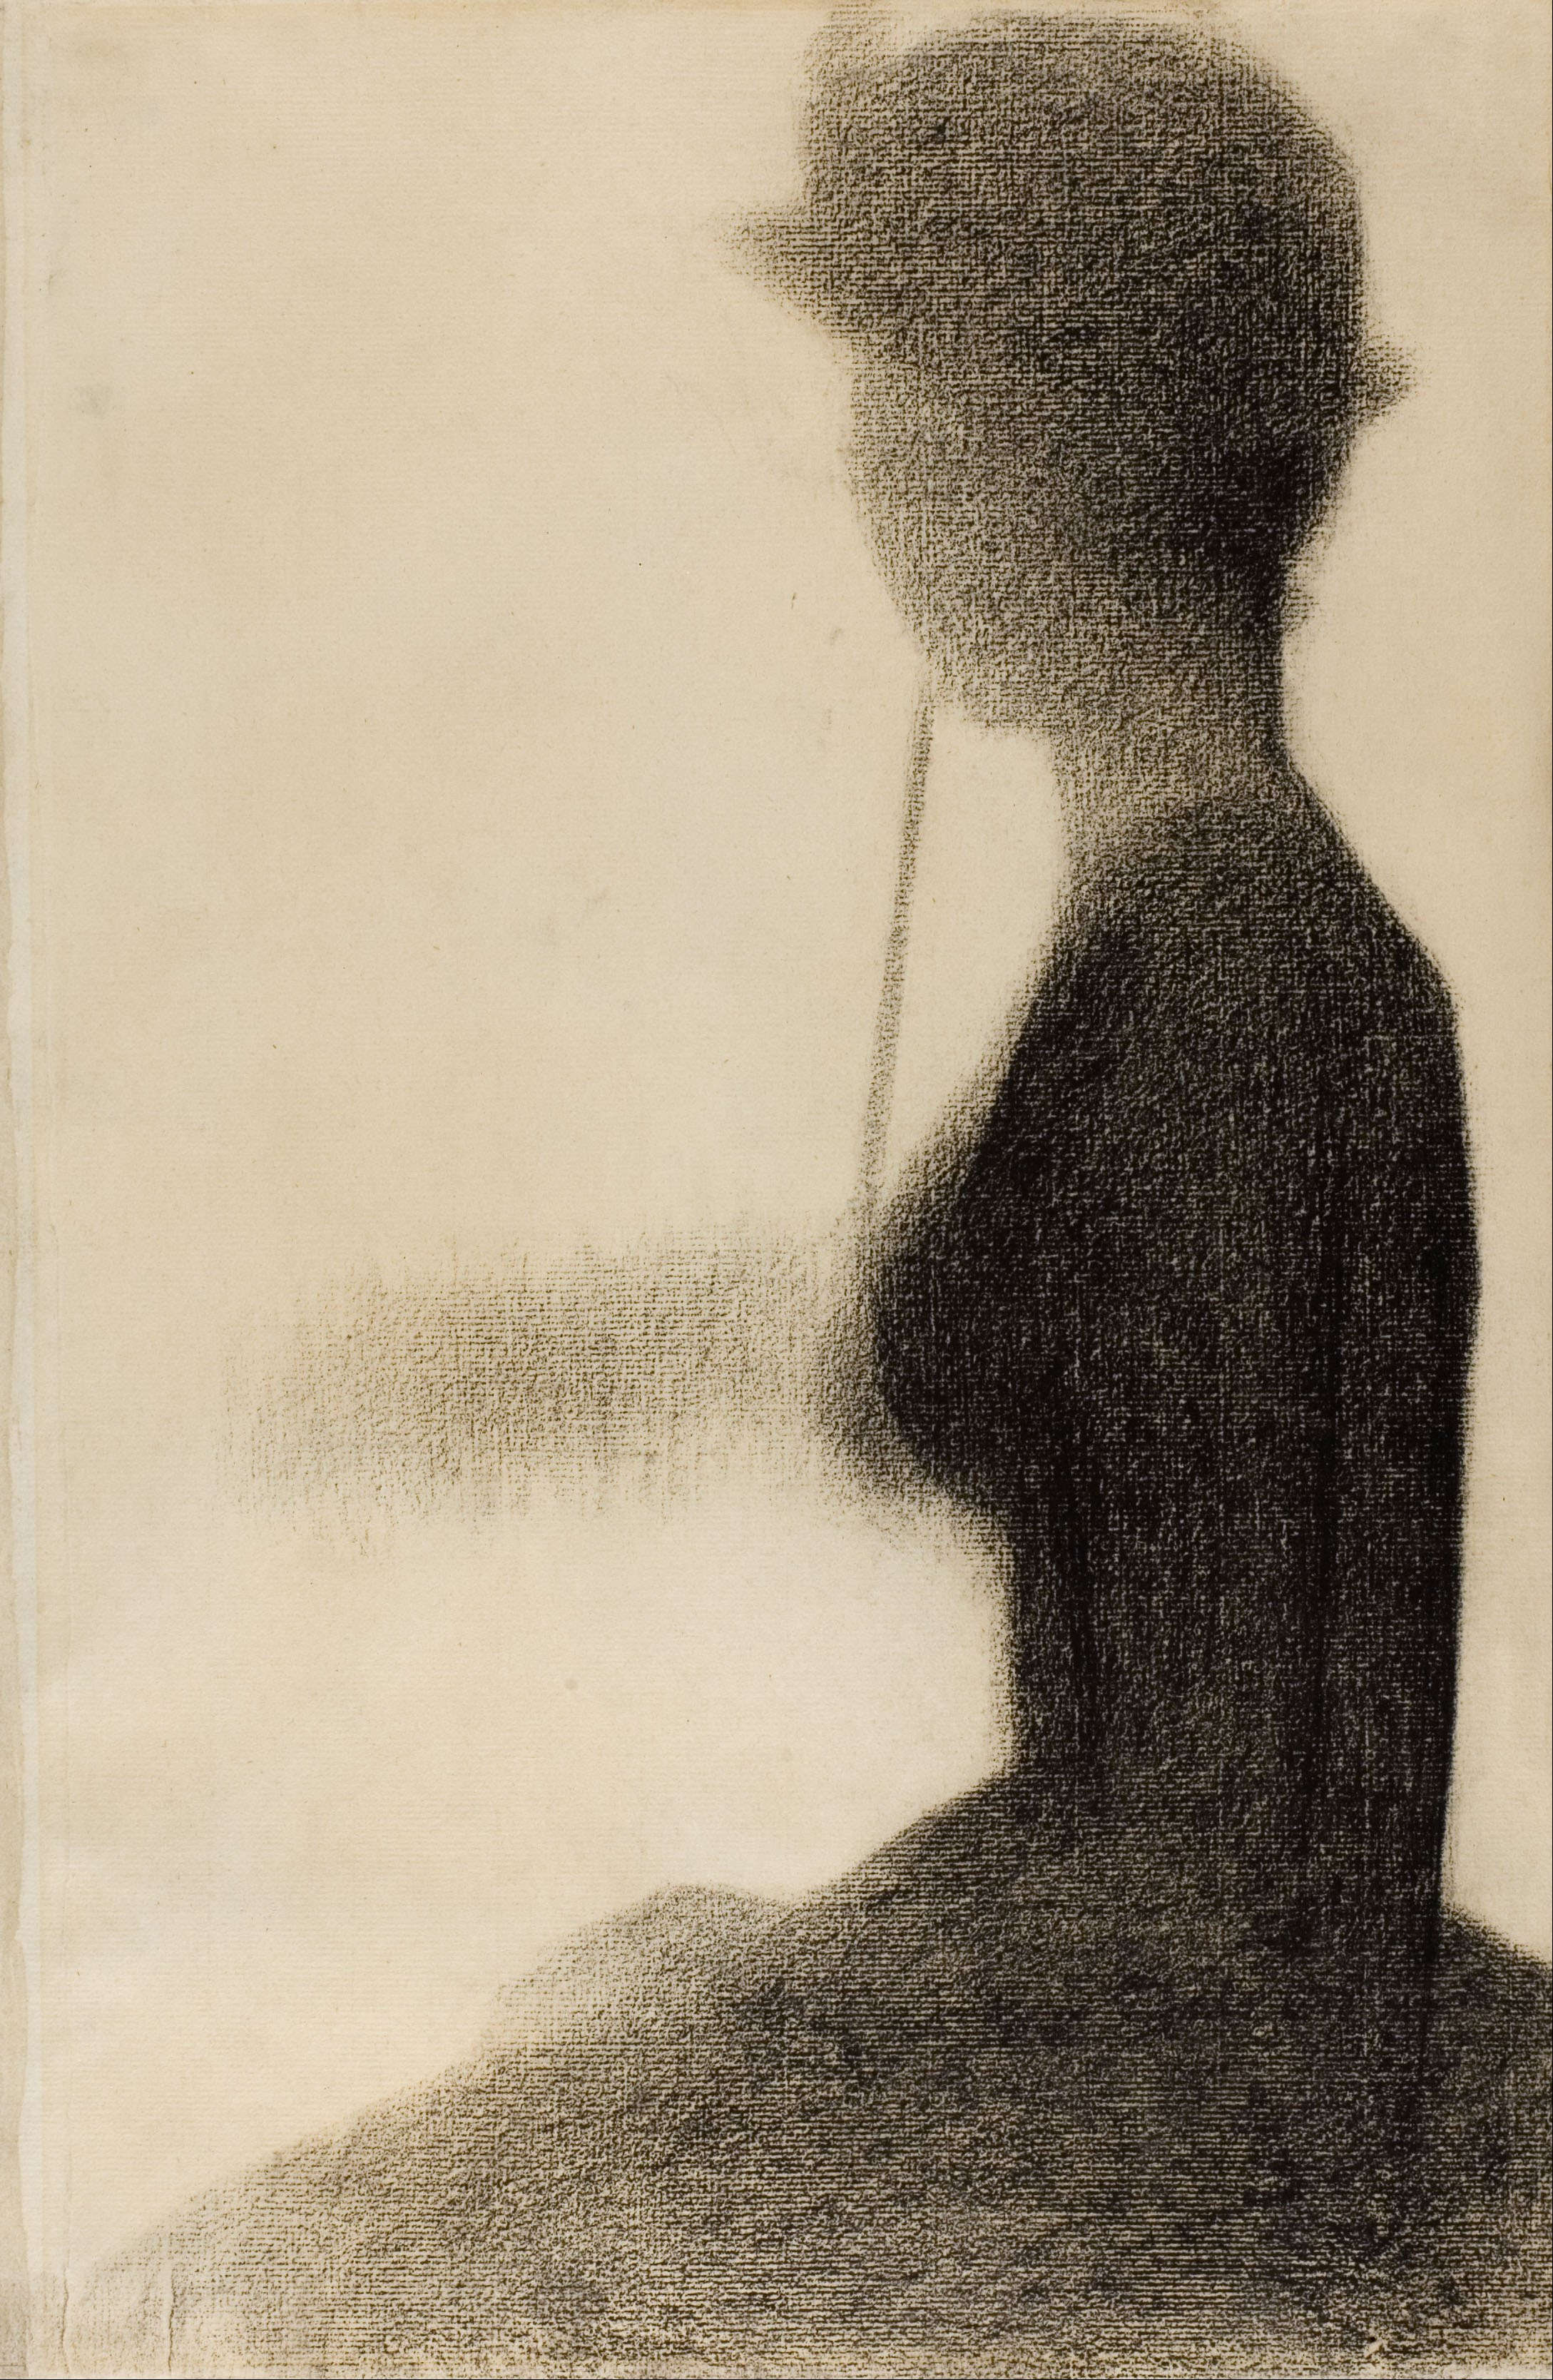 打陽傘坐著的女人 by 喬治 秀拉 - 西元1884-1885 - 477 x 315 毫米 